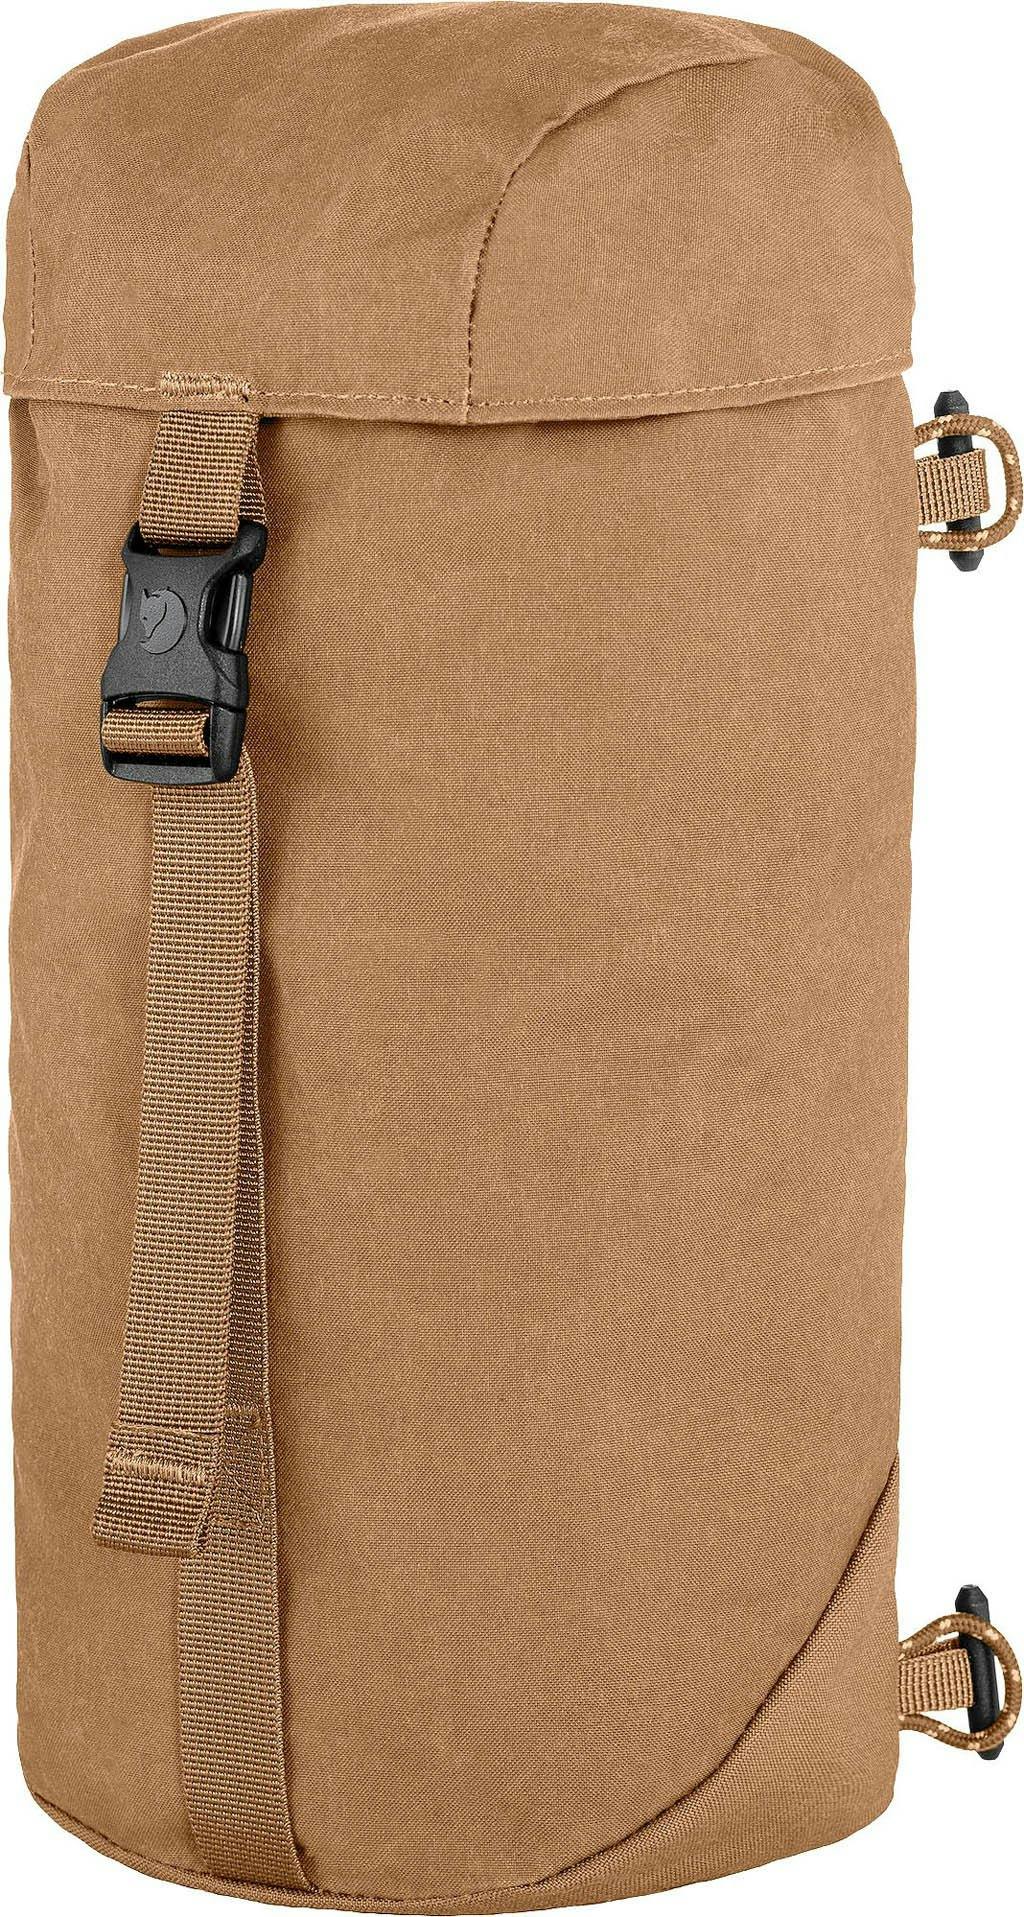 Product image for Kajka Side Pocket Bag 4L